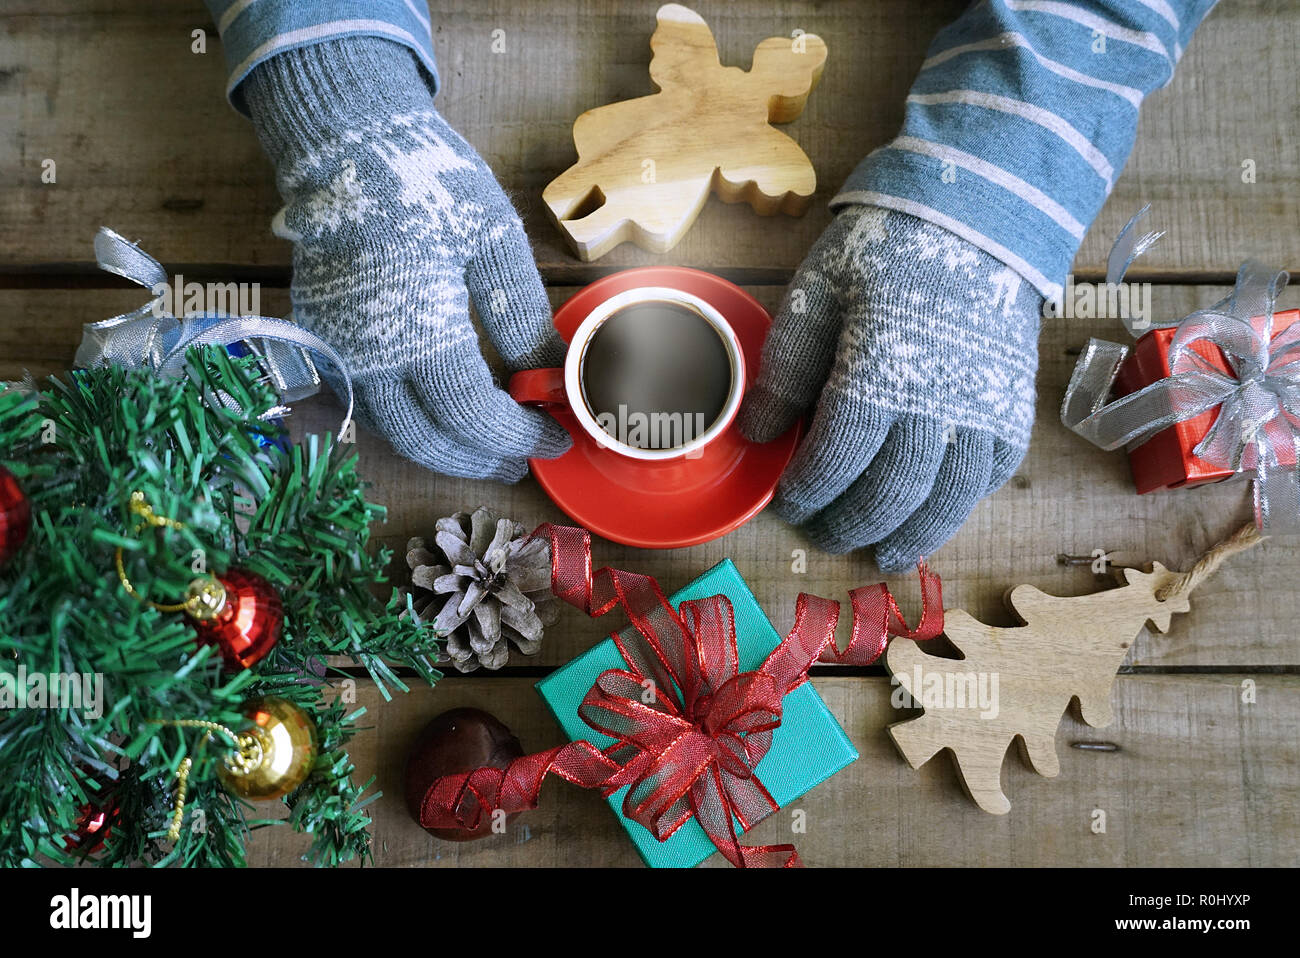 Tourisme Vue de dessus portez des gants et garder au chaud, une tasse à café sur table en bois qui ont des dons décorer thème de Noël Banque D'Images